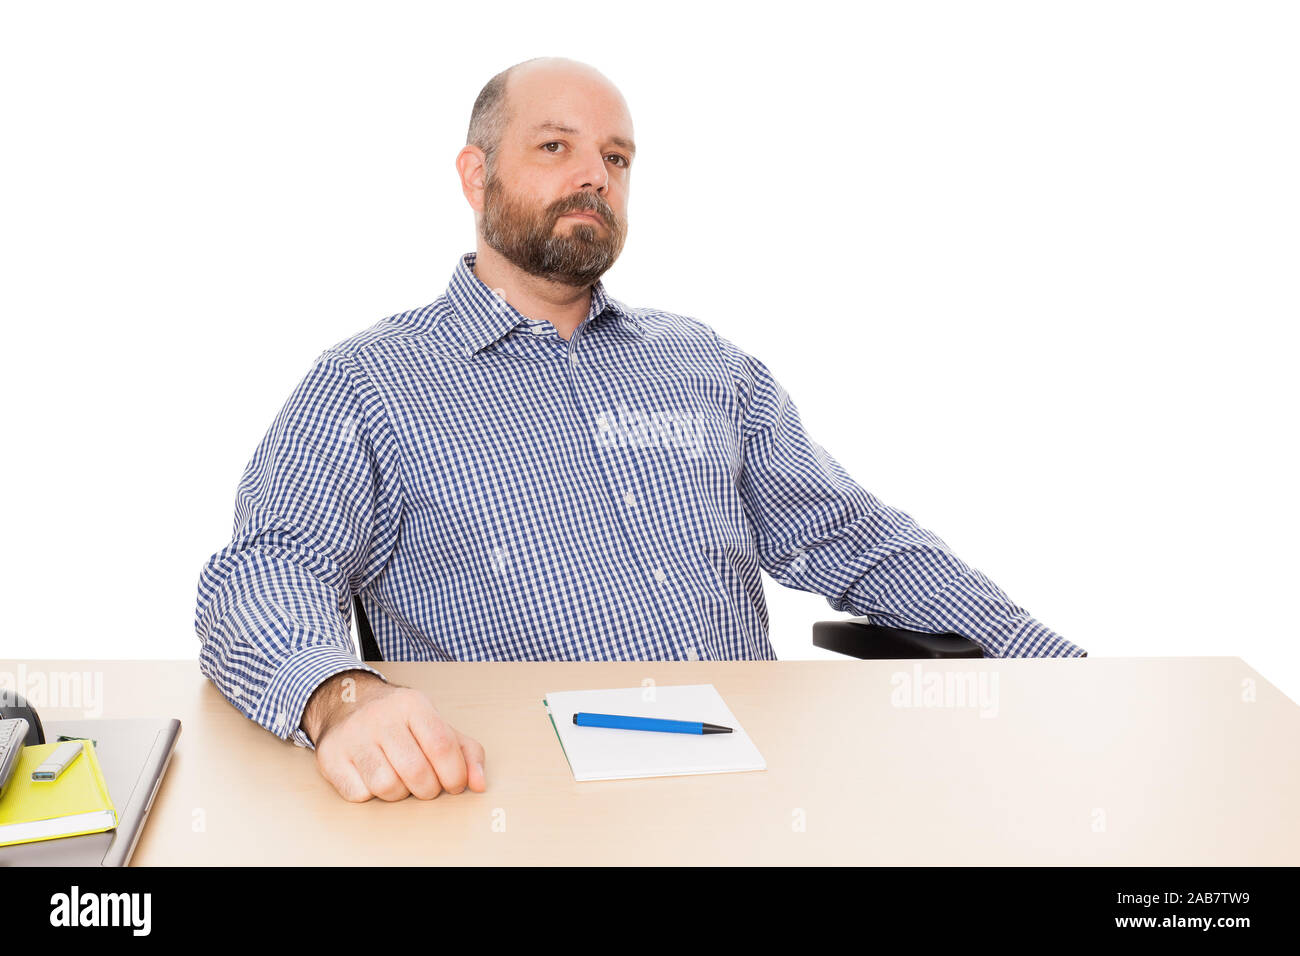 Ein Mann mit Bart un seinem Schreibtisch vor weissem Grund Foto Stock